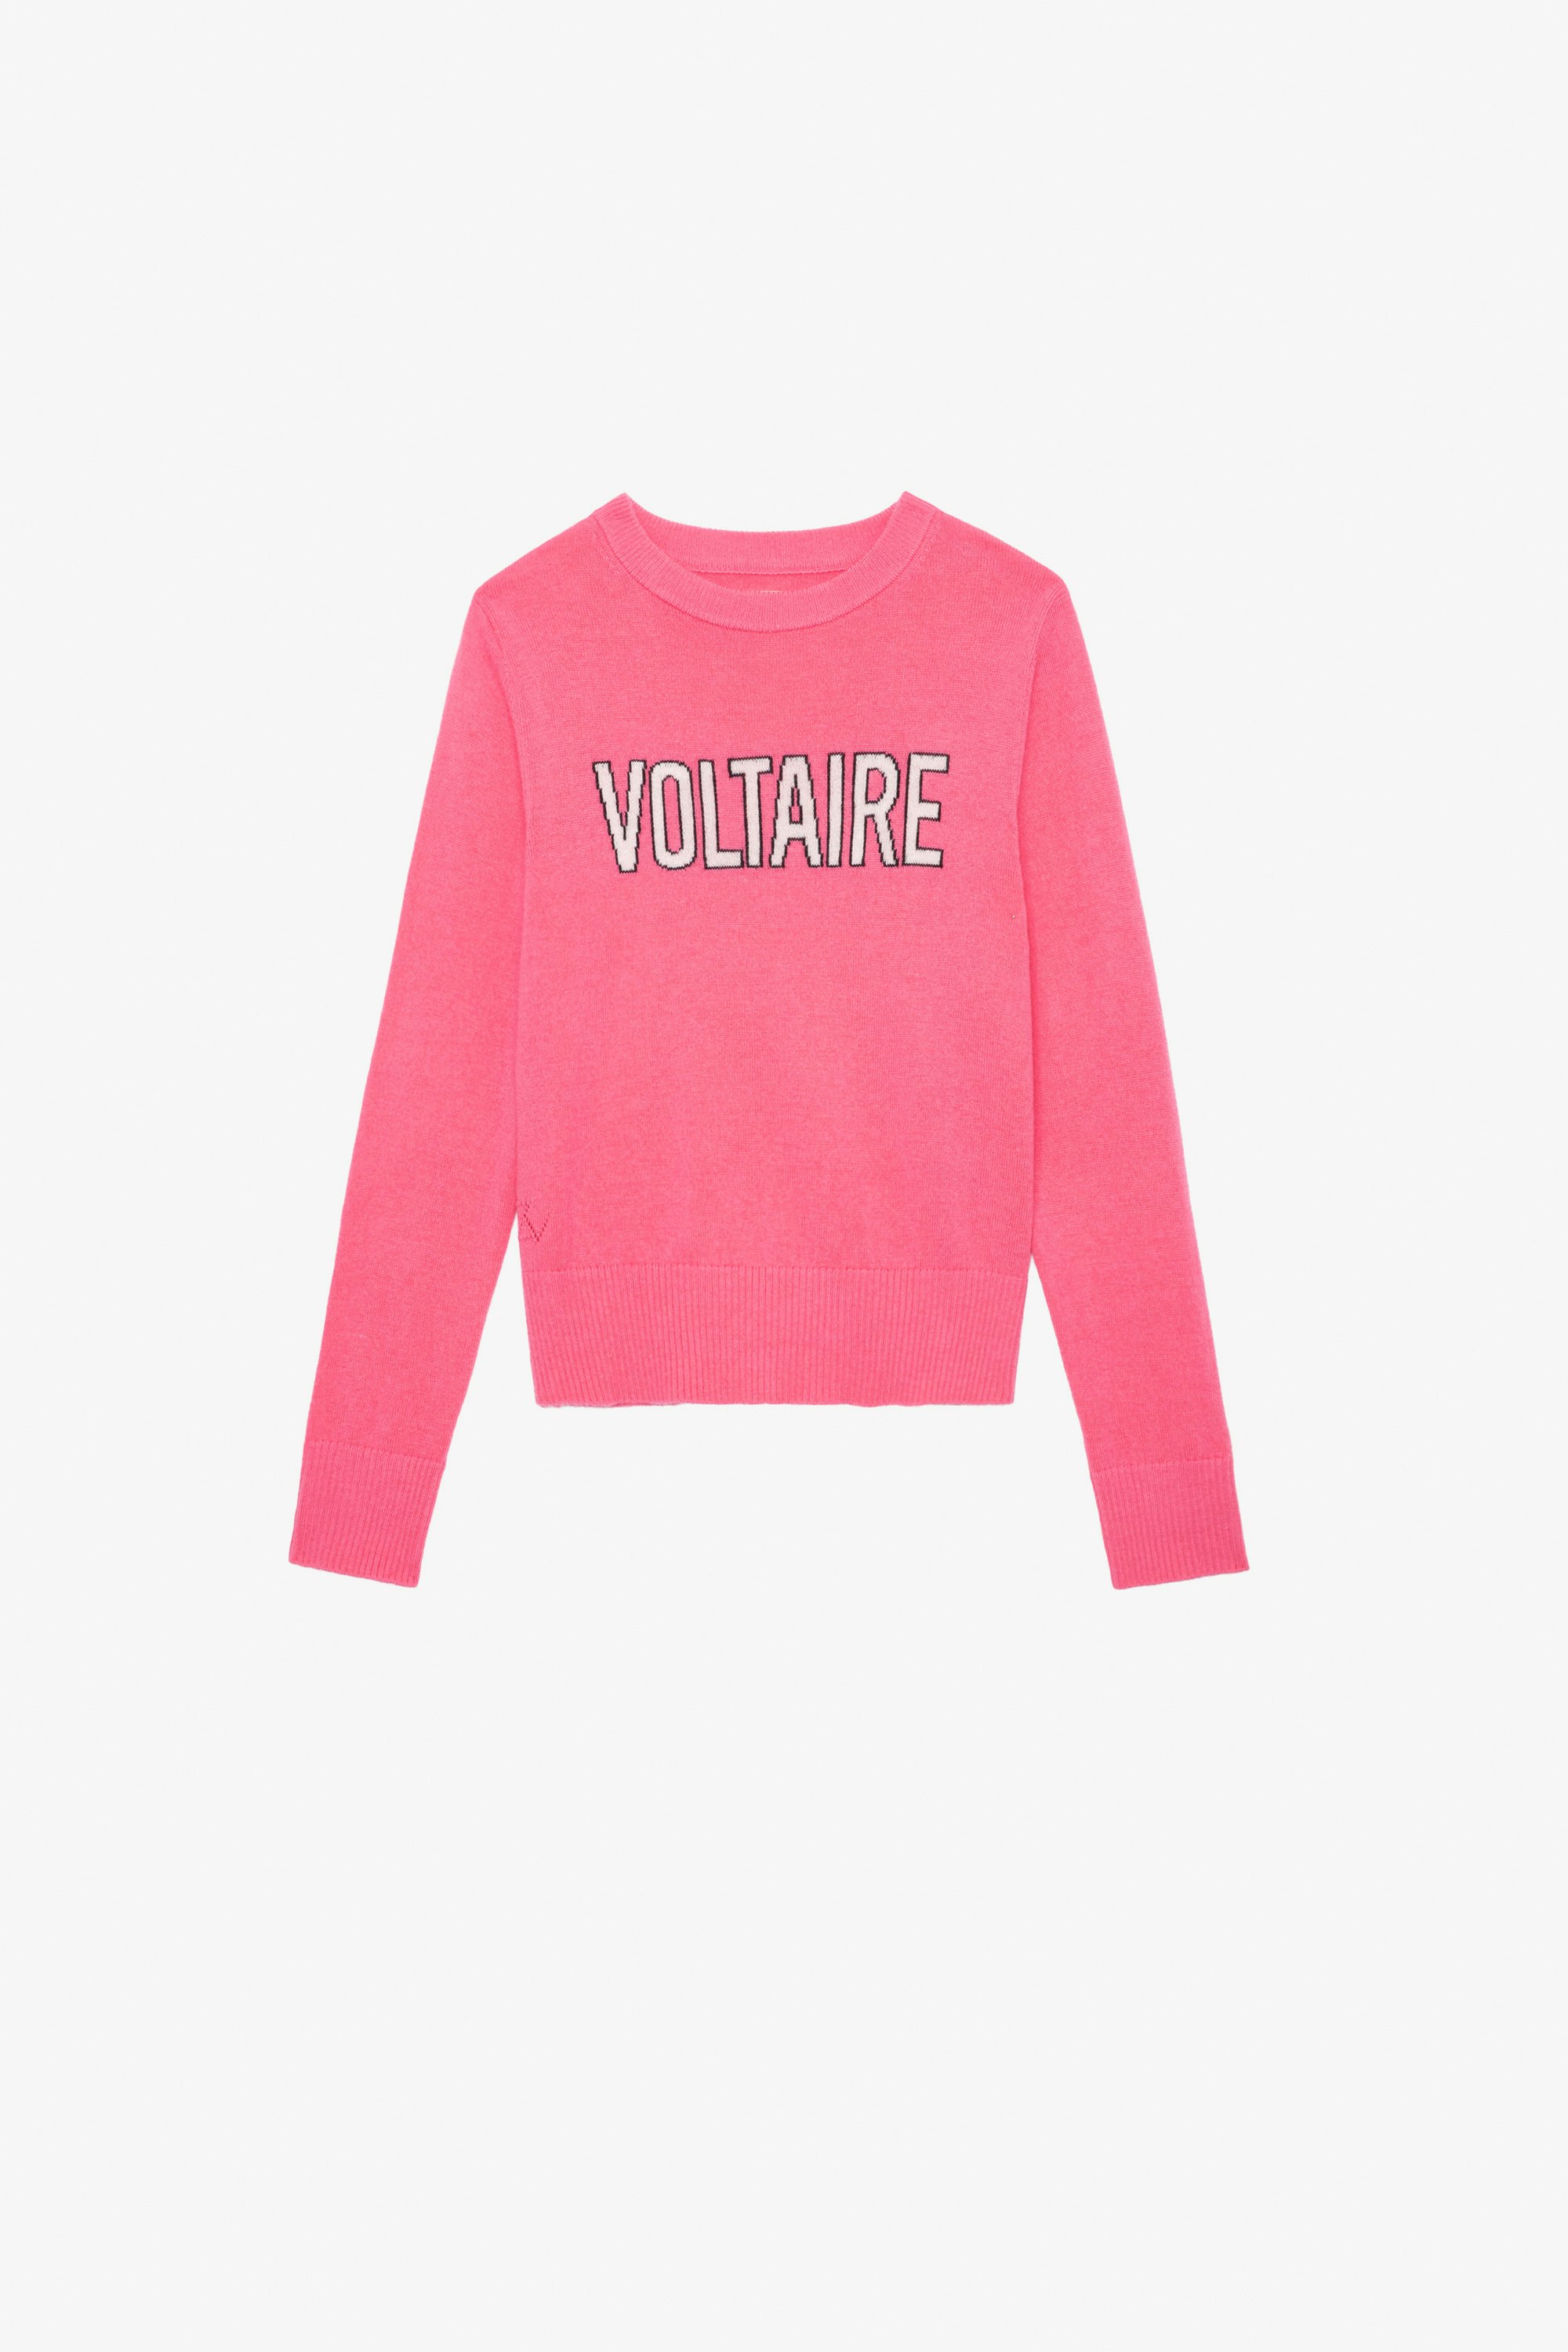 Maglione Drum Bambina - Maglione in maglia rosa con scritta "Voltaire" da bambina.